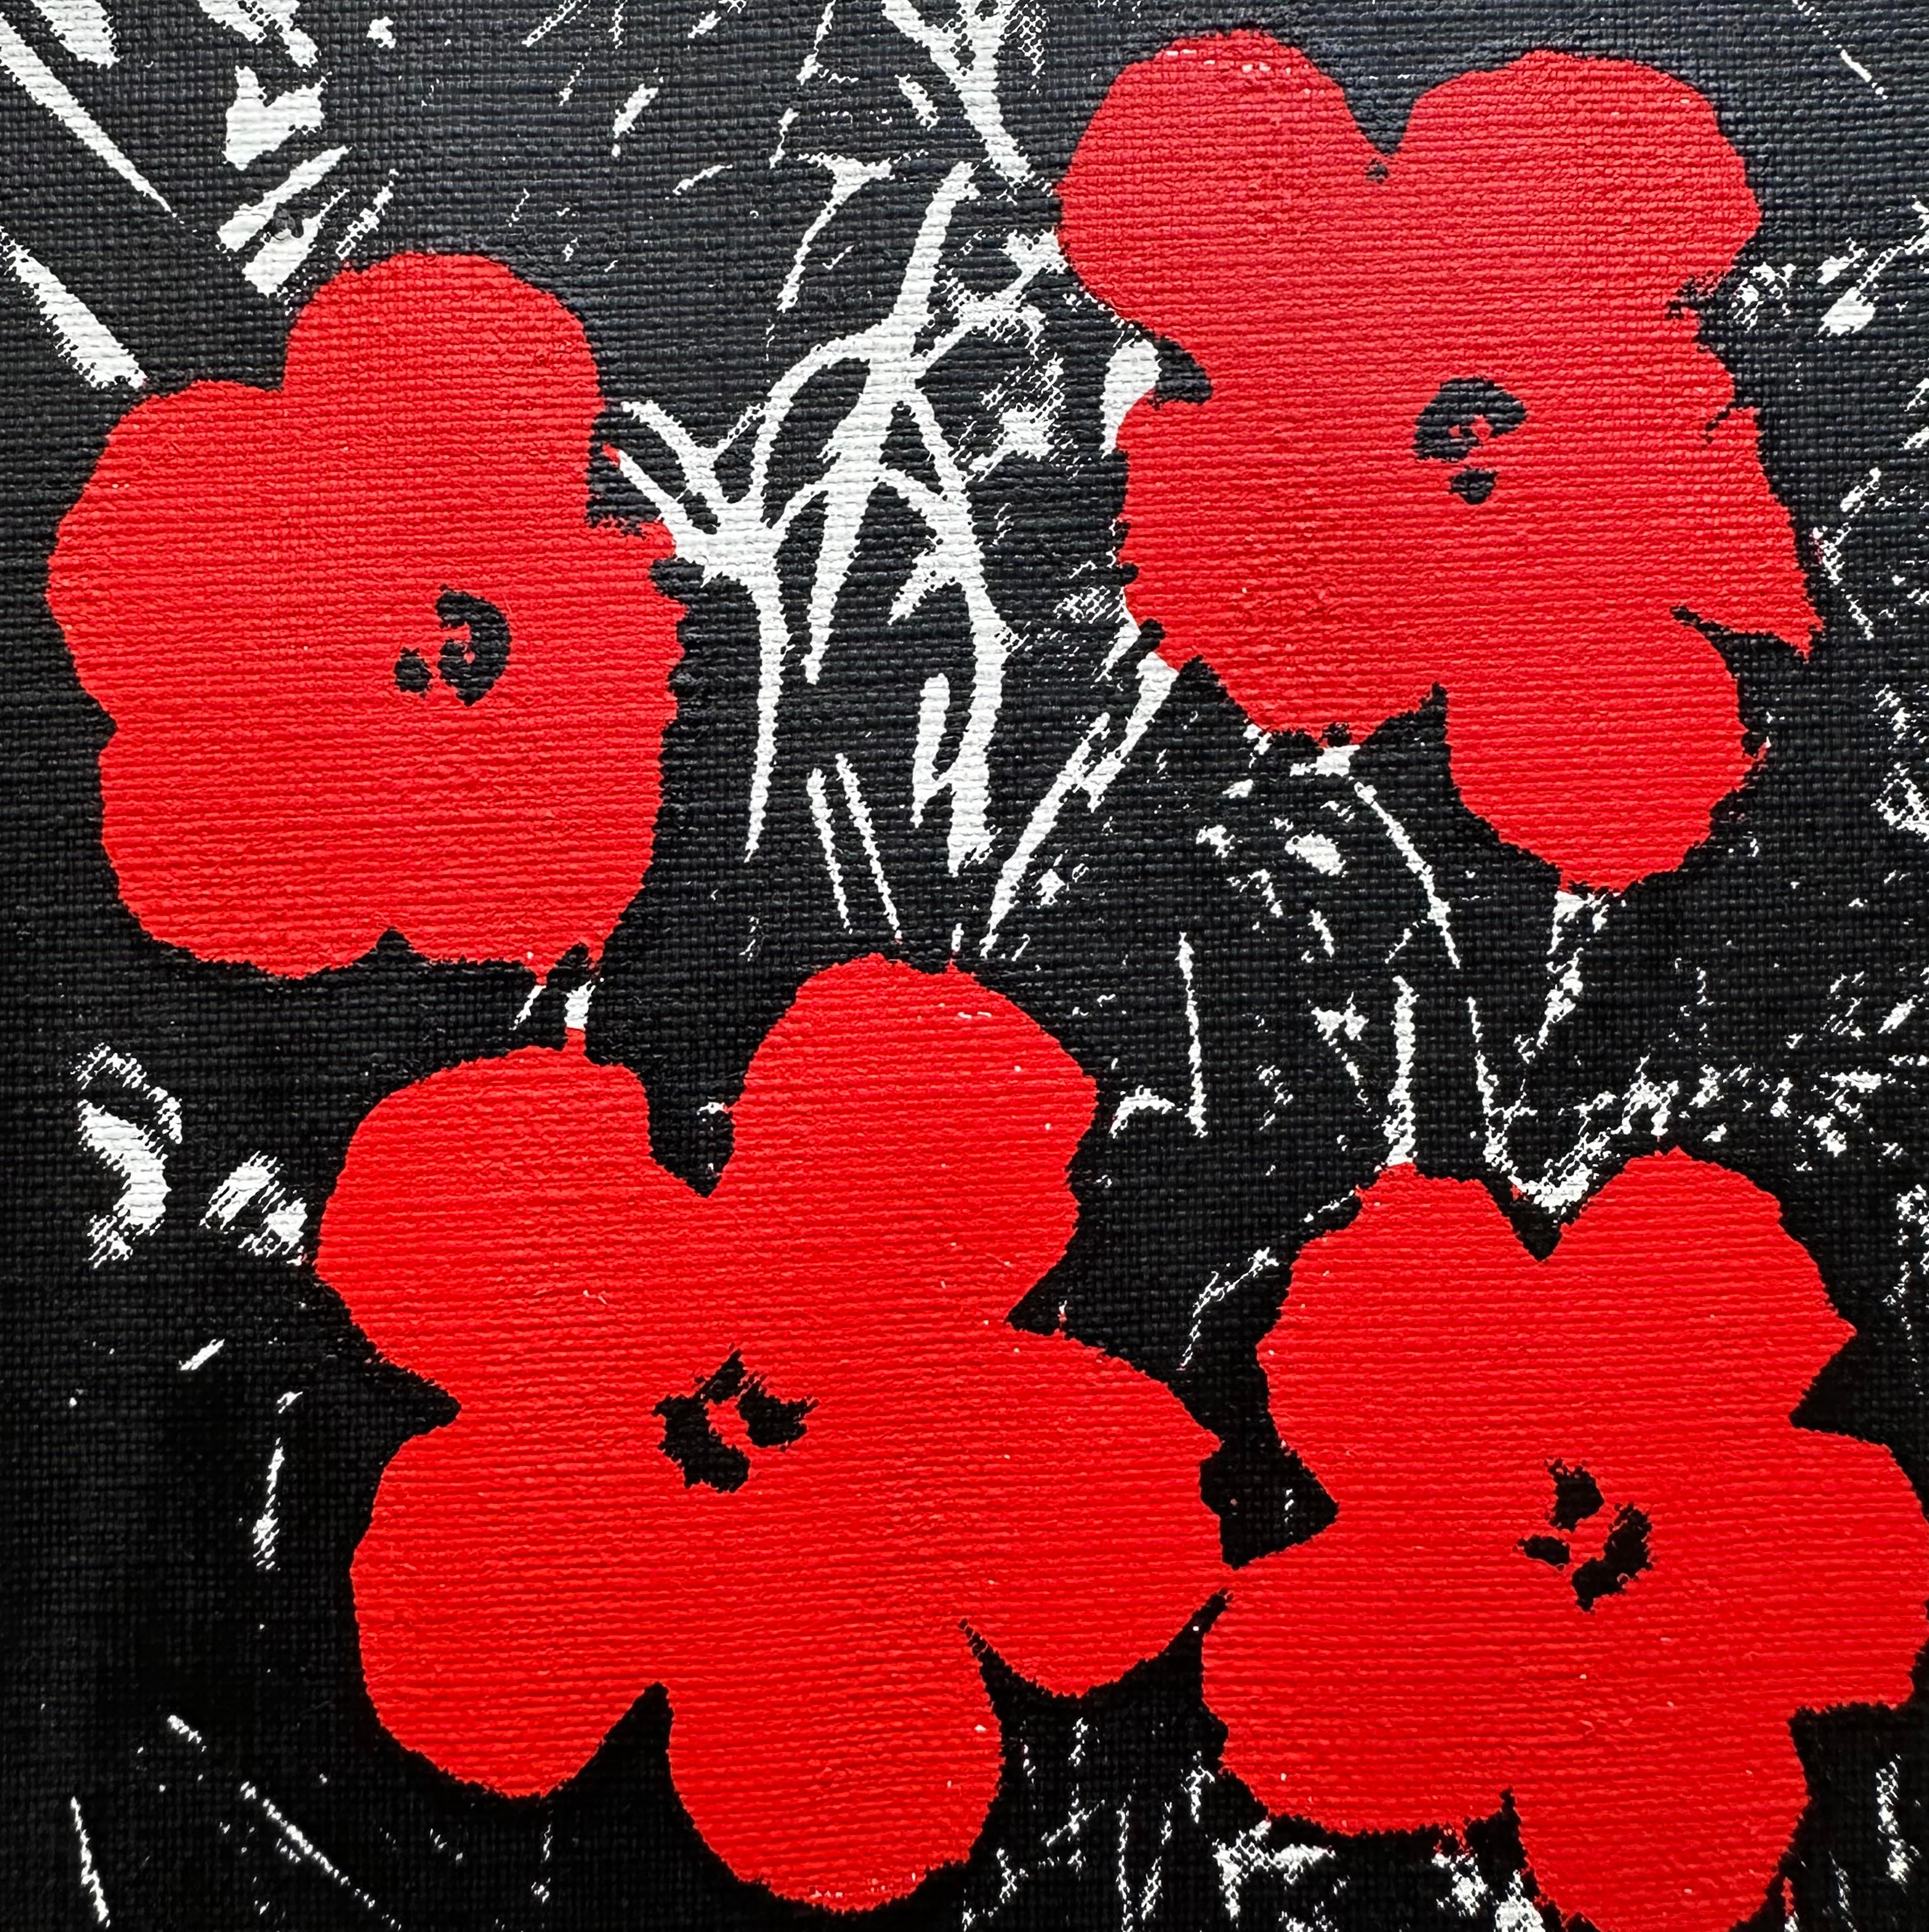 Verweigerte Warhol-Blumen, (Rot) Siebdruckgemälde von Charles Lutz
Siebdruck und Acryl auf Leinwand mit Verweigerungsstempel des Andy Warhol Art Authentication Board.
5 x 5" Zoll
2008

Lutz' Serie "Warhol Denied" aus dem Jahr 2007 erregte